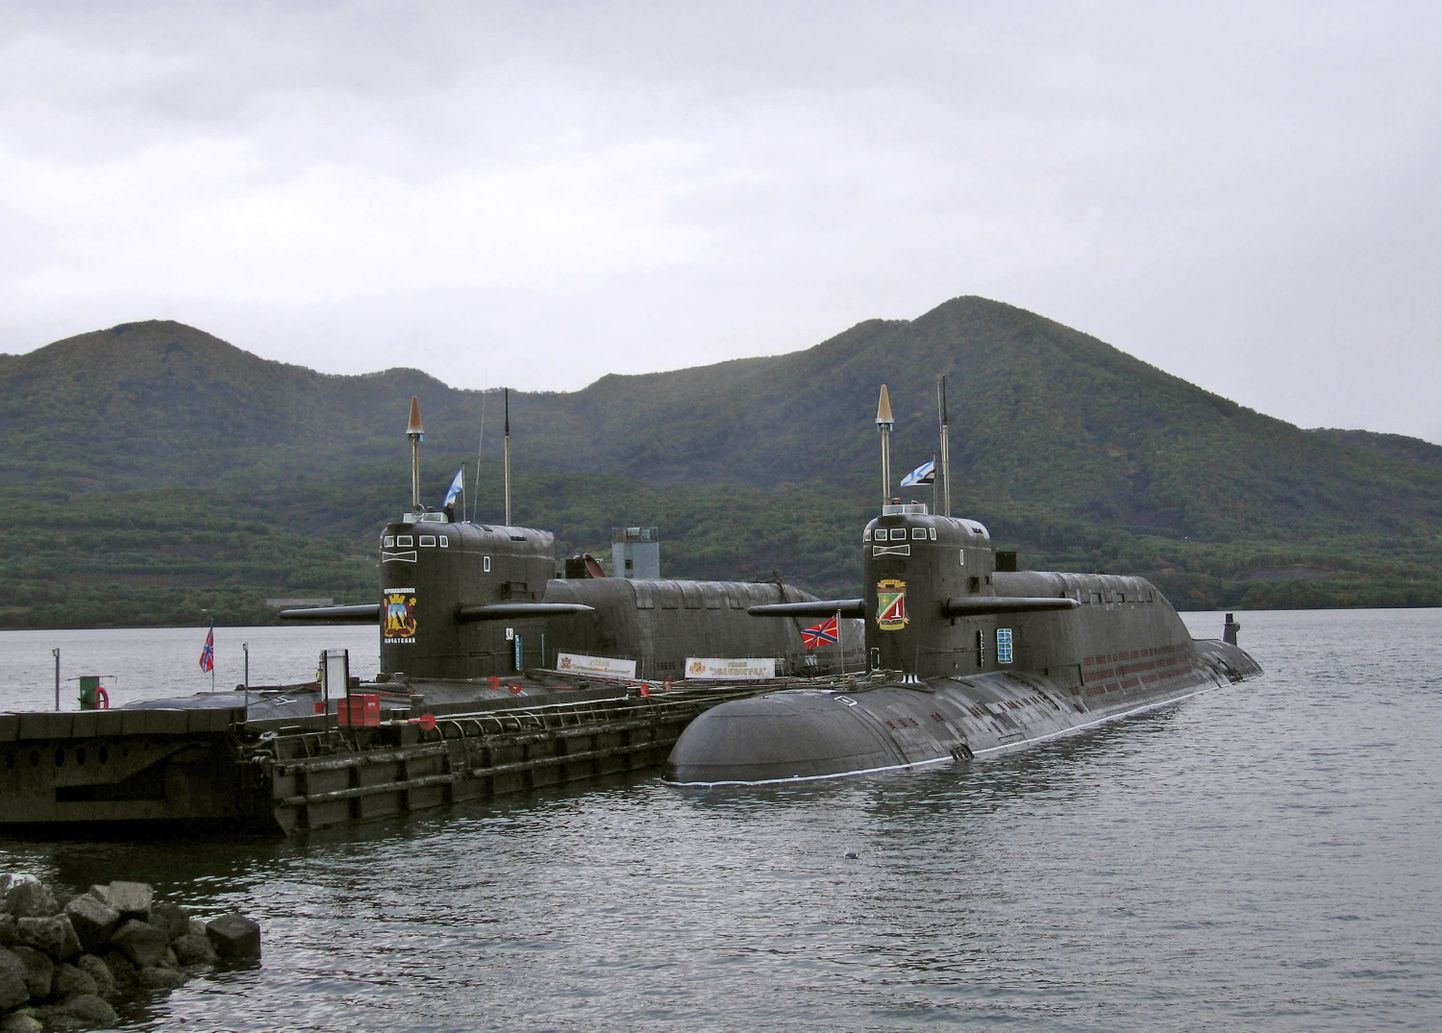 Fotol olevad Venemaa Vaikse ookeani laevastiku tuumaallveelaevad pole õnnetusega seotud.